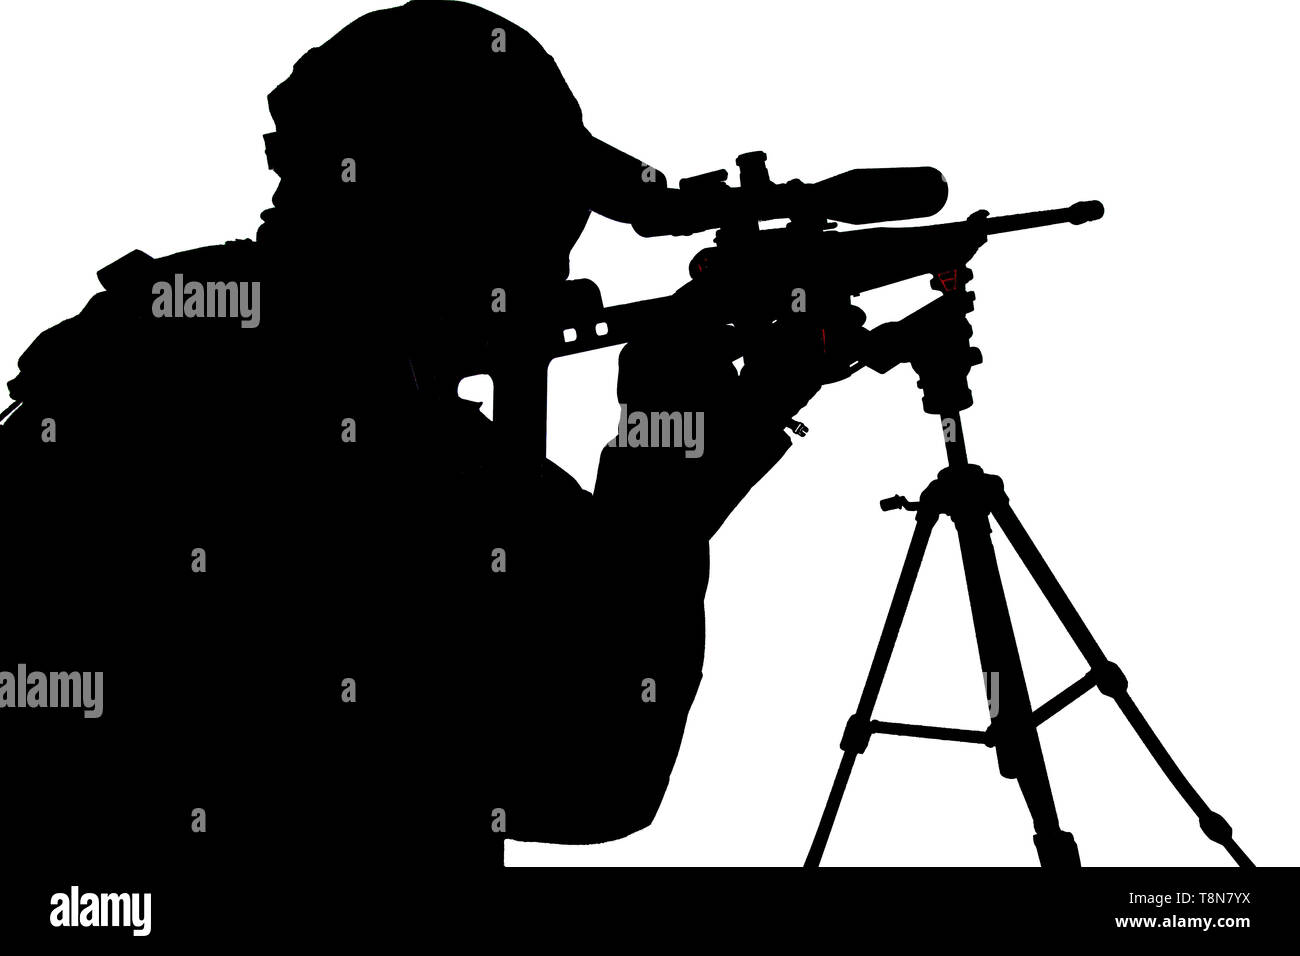 La polizia SWAT sniper mirando con studio di fucile spara Foto Stock